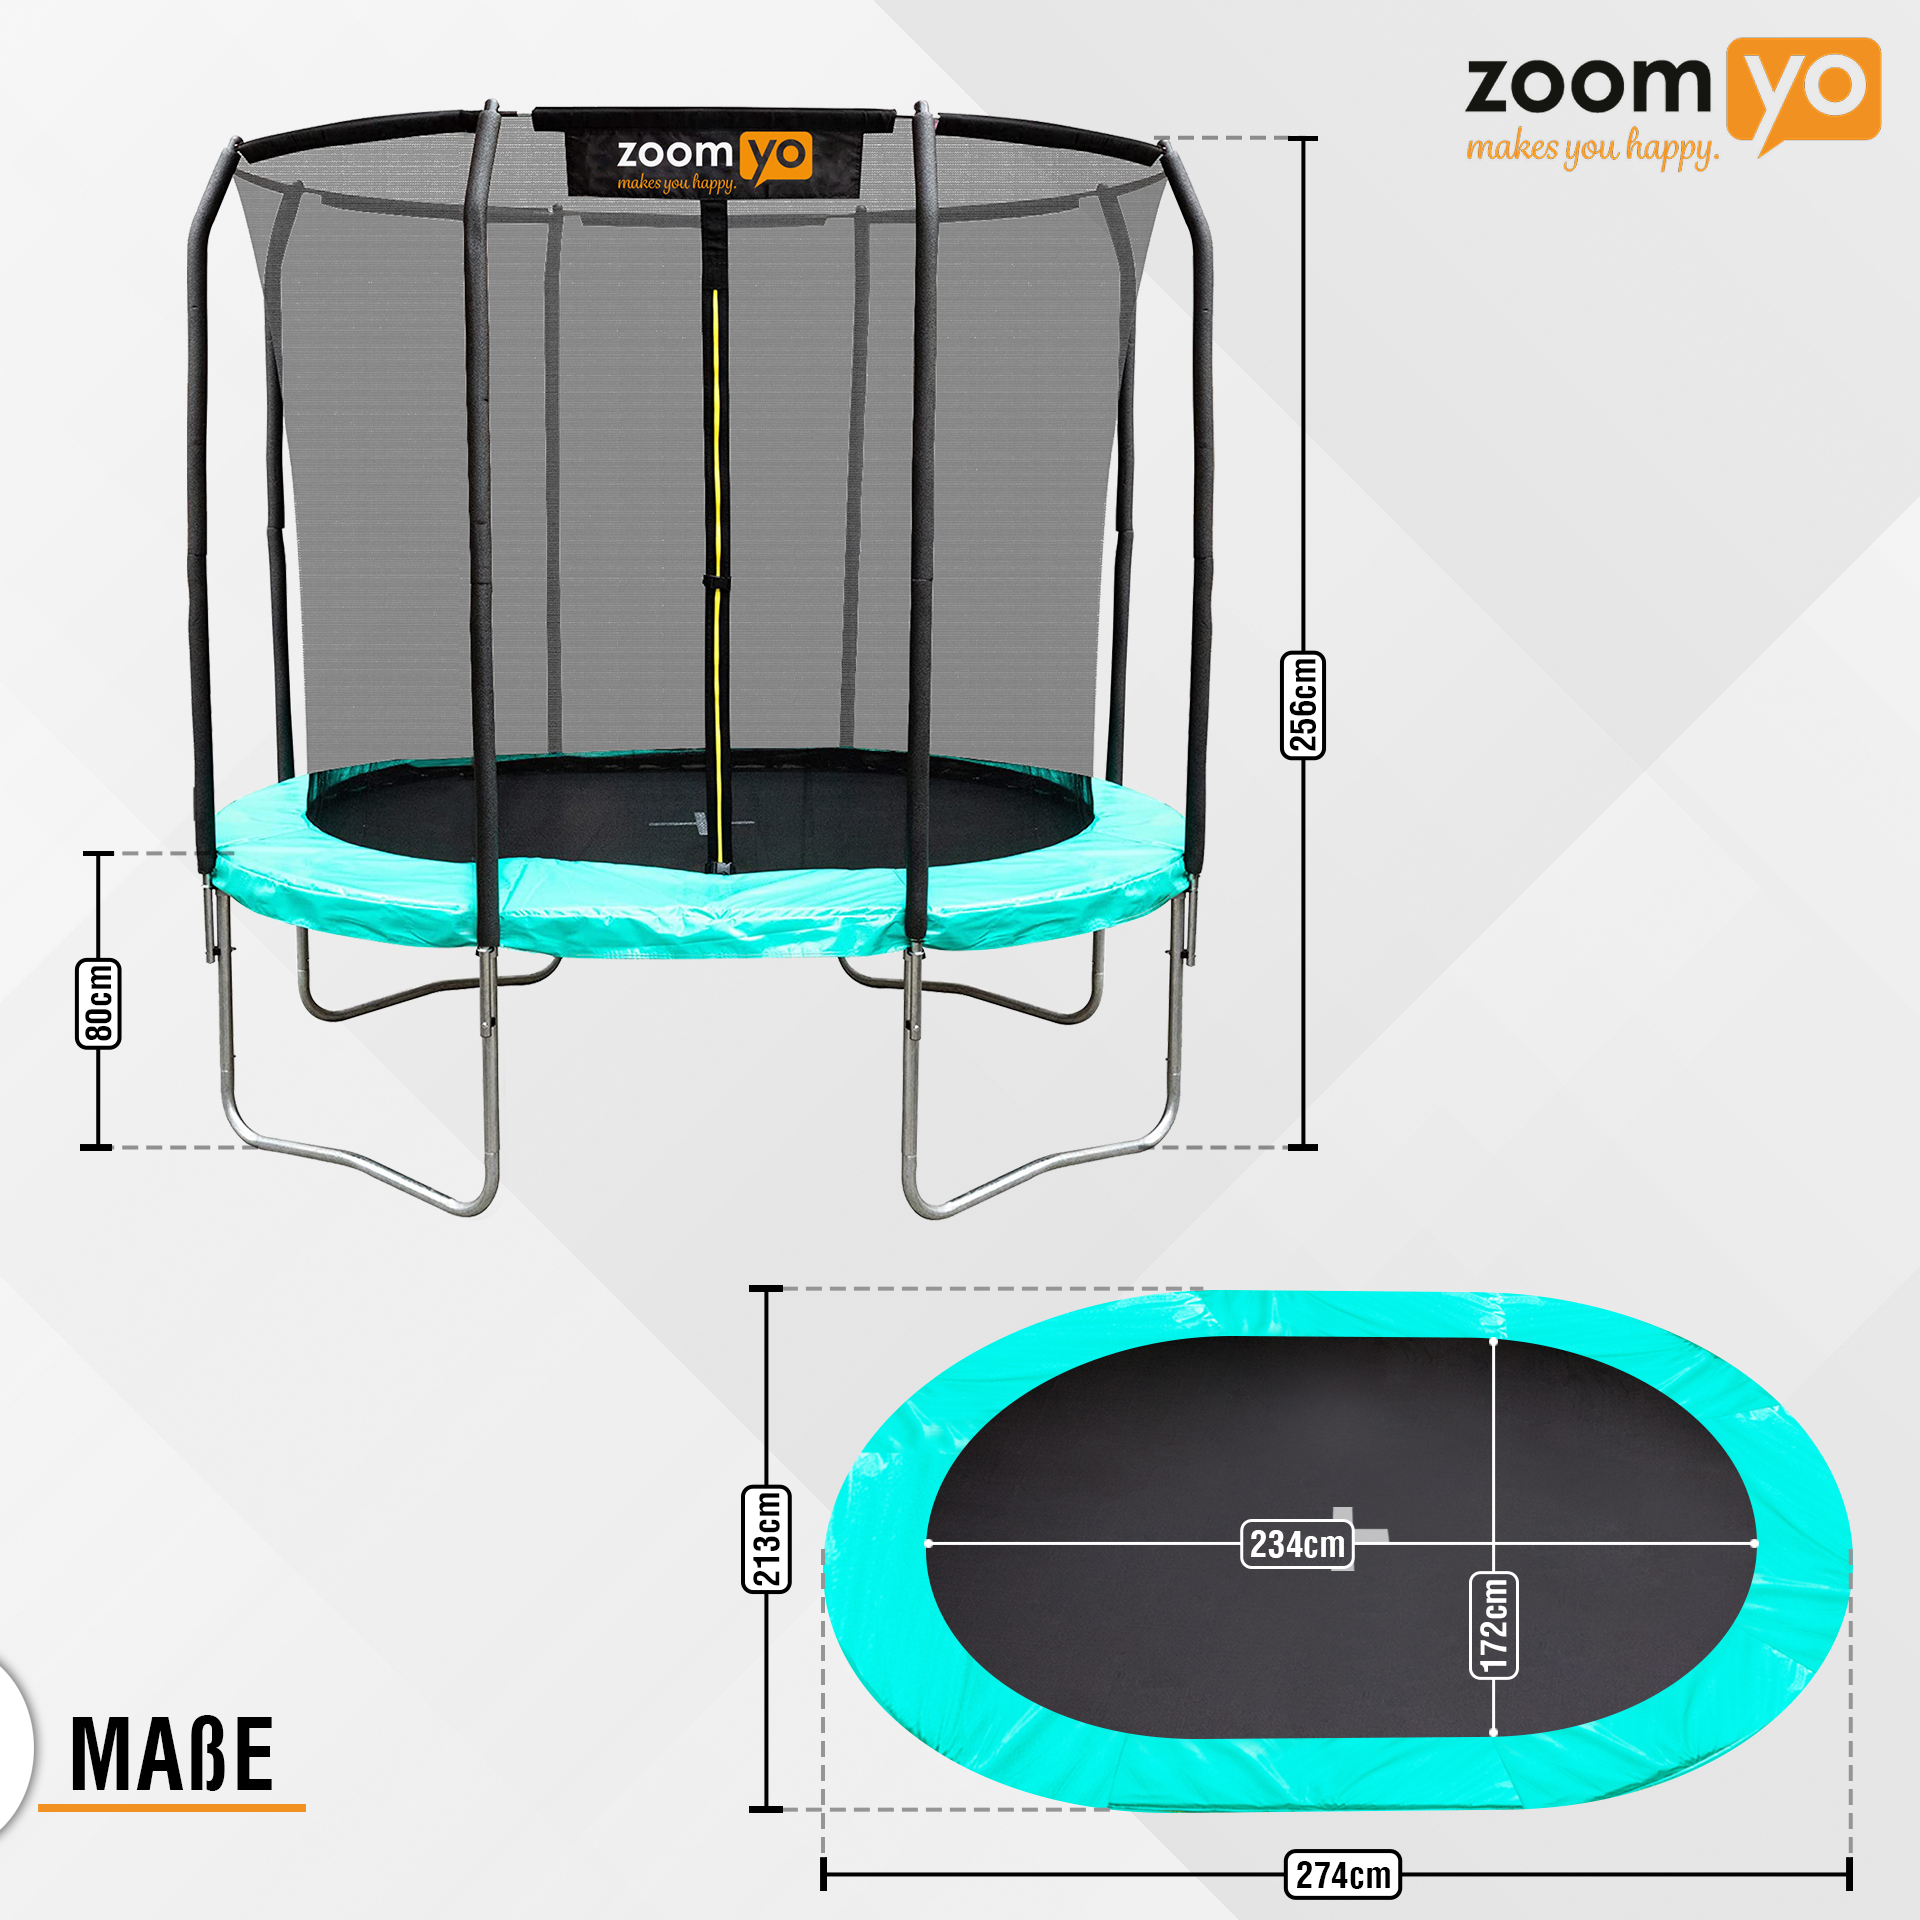 ZOOMYO Trampolin,oval,Leiter separat erhältlich,für Trampolin, Sprungtechniken komplexe schwarz-Grün